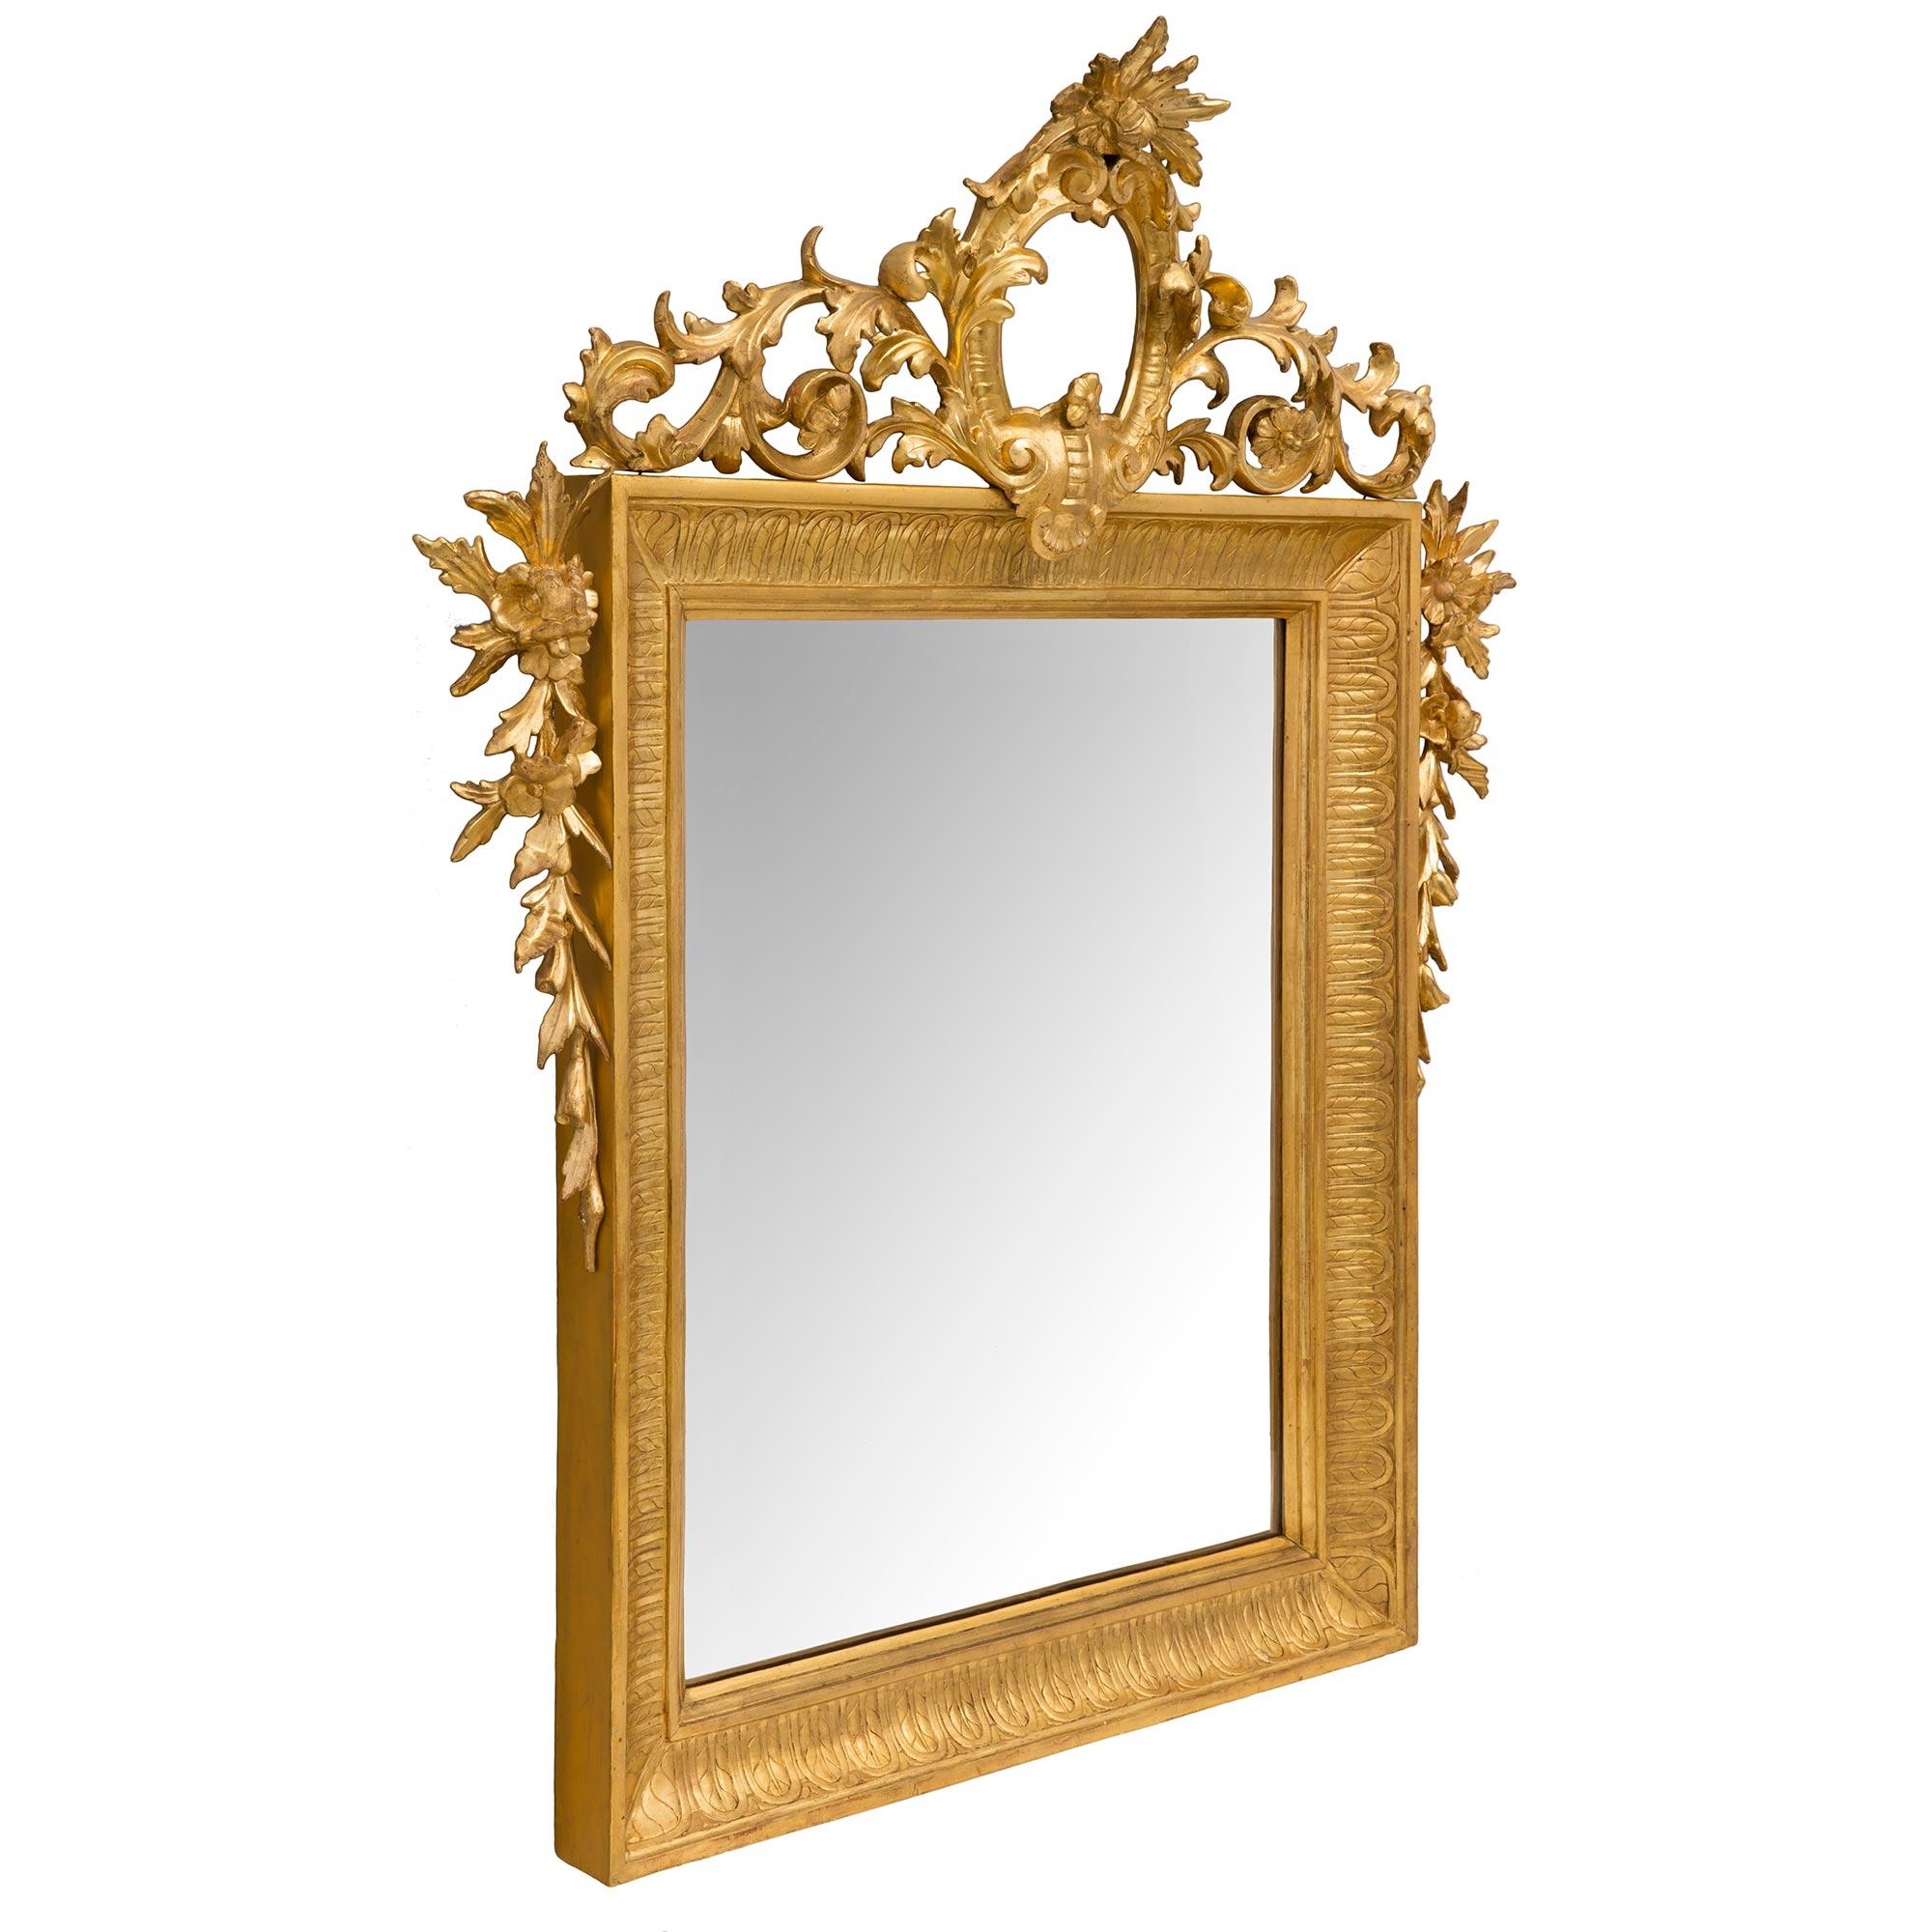 Une superbe paire de miroirs en bois doré de style Louis XVI du 19ème siècle. Chaque miroir conserve sa plaque d'origine encadrée dans un beau cadre en bois doré moucheté avec des motifs feuillus. De chaque côté et au sommet de la couronne, on